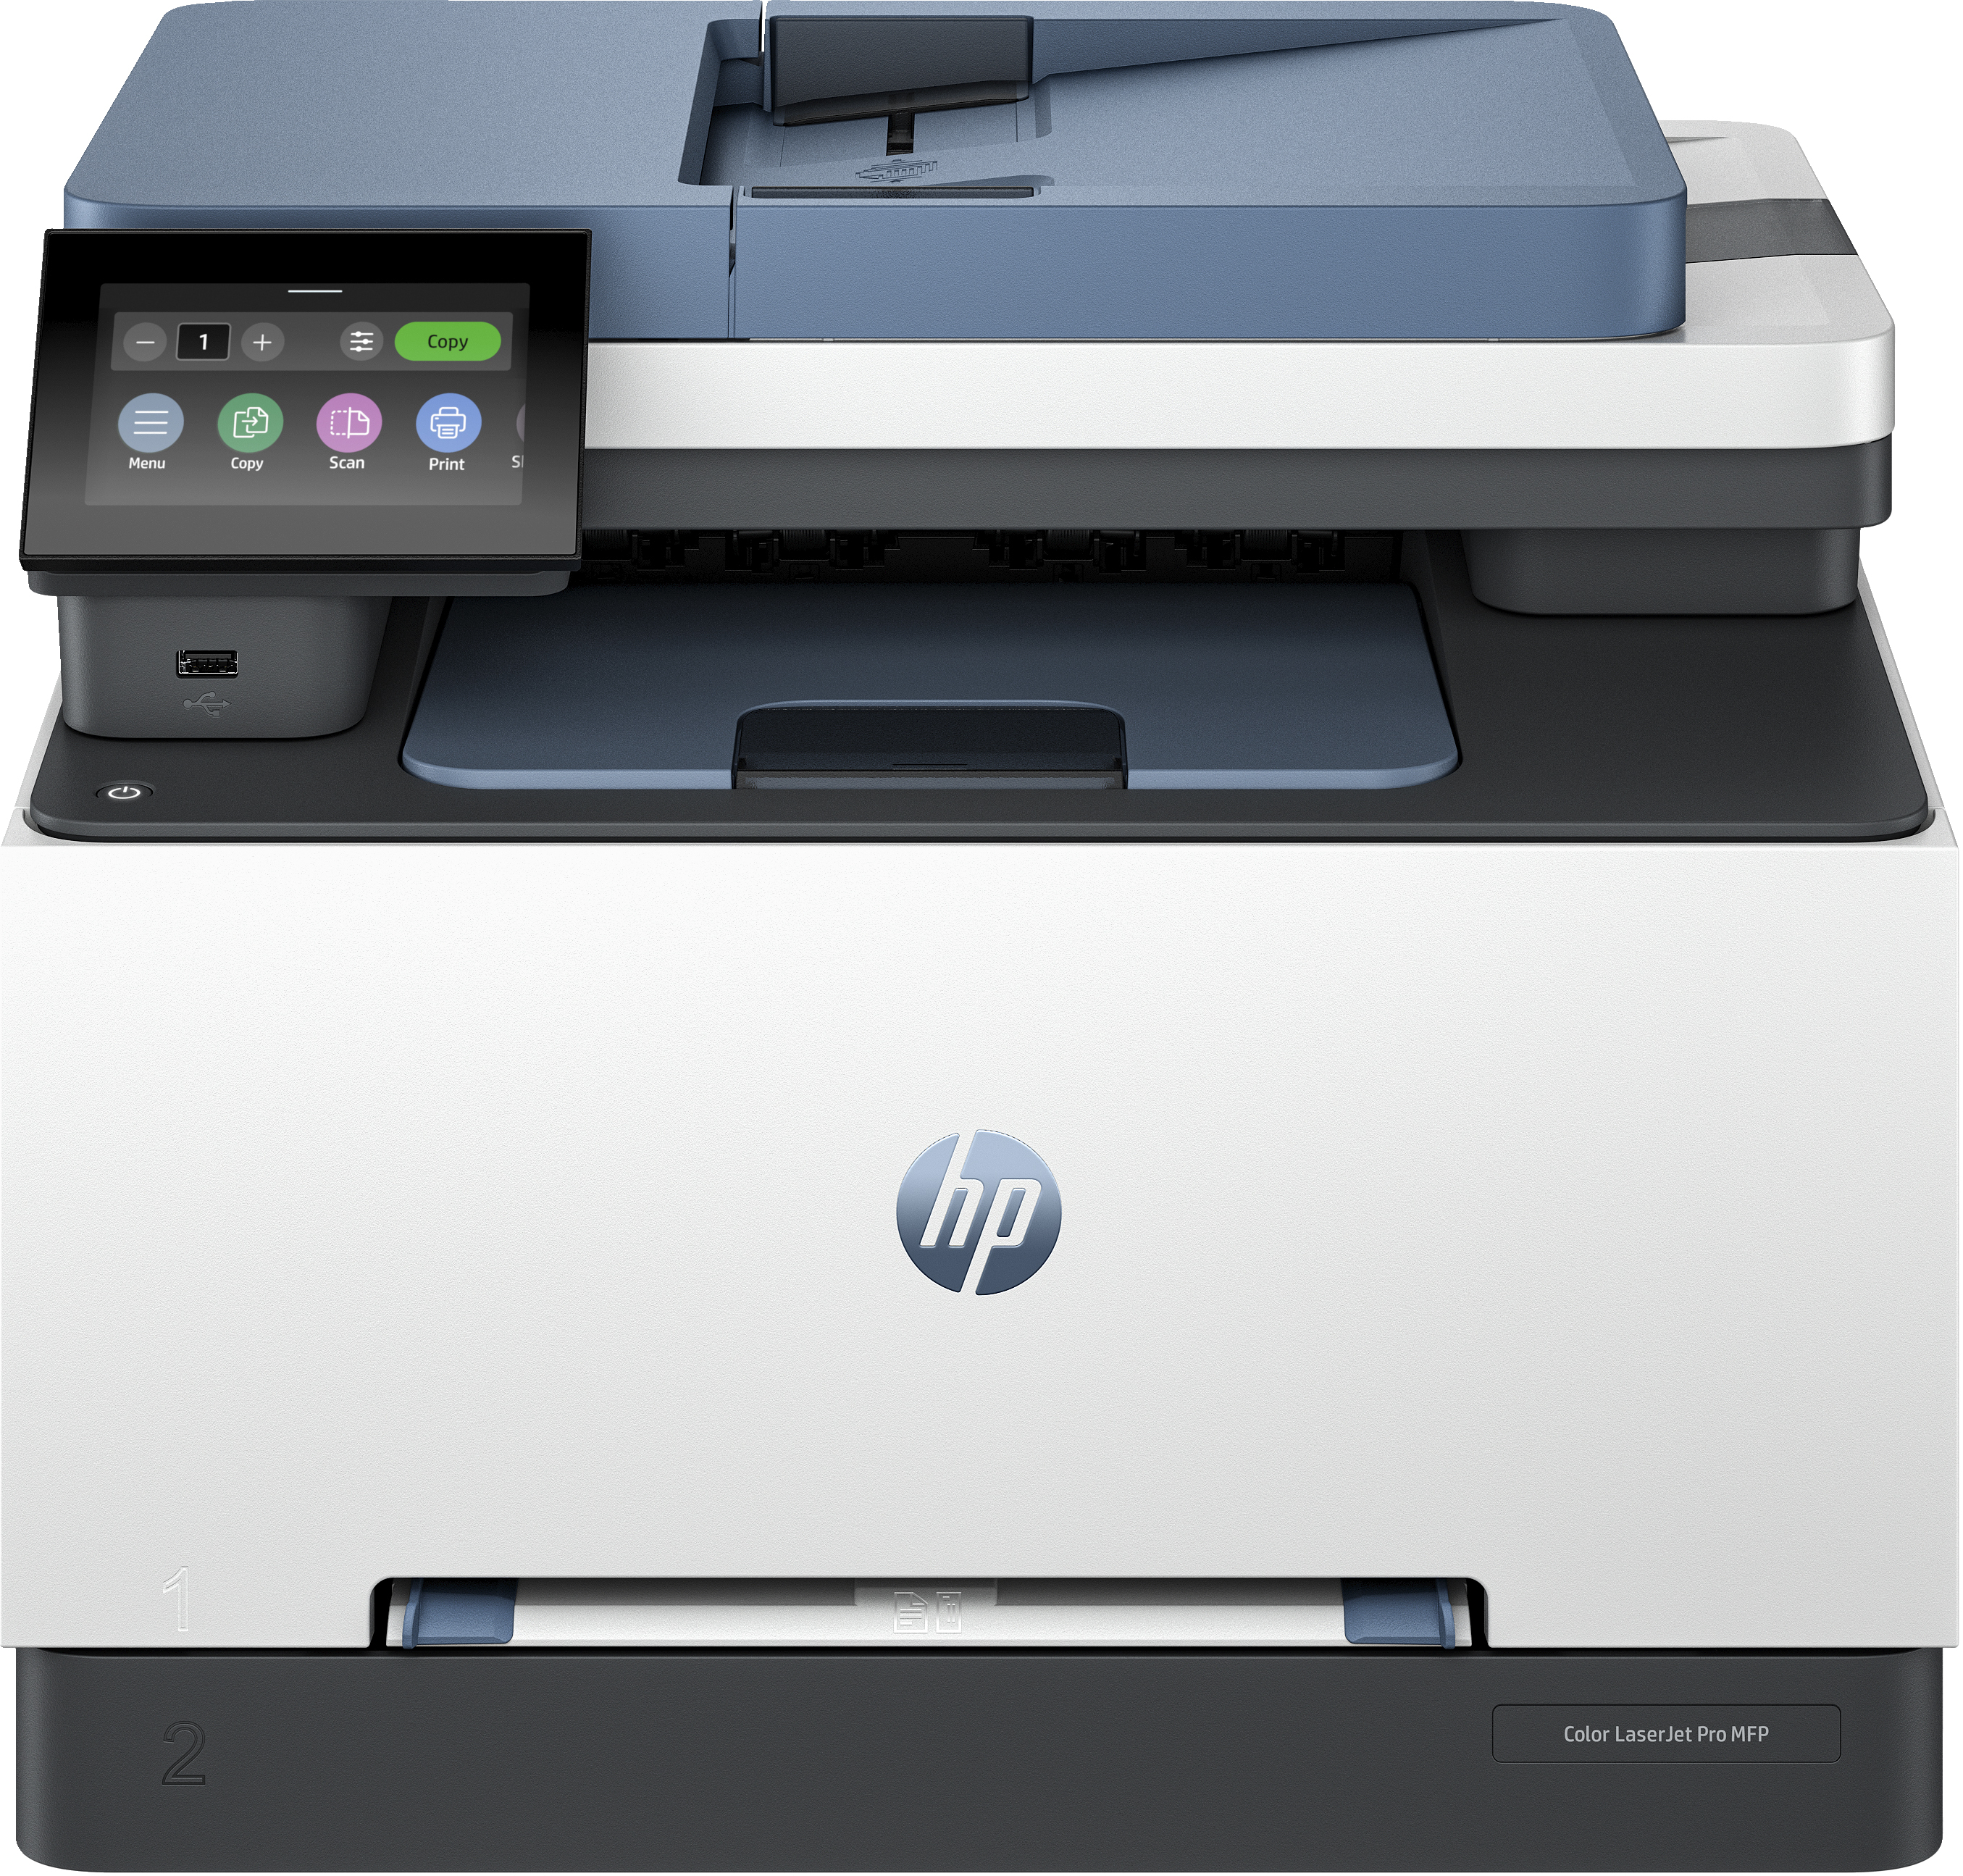 HP HP Color LaserJet Pro MFP 3302sdw, Kleur, Printer voor Kleine en middelgrote ondernemingen, Printen, kopi&#235;ren, scannen, Draadloos; printen vanaf telefoon of tablet; automatische documentinvoer; dubbelzijdig printen; scannen naar e-mail; scannen naar PDF; USB-poort voorzijde; touchscreen; TerraJet-cartridge